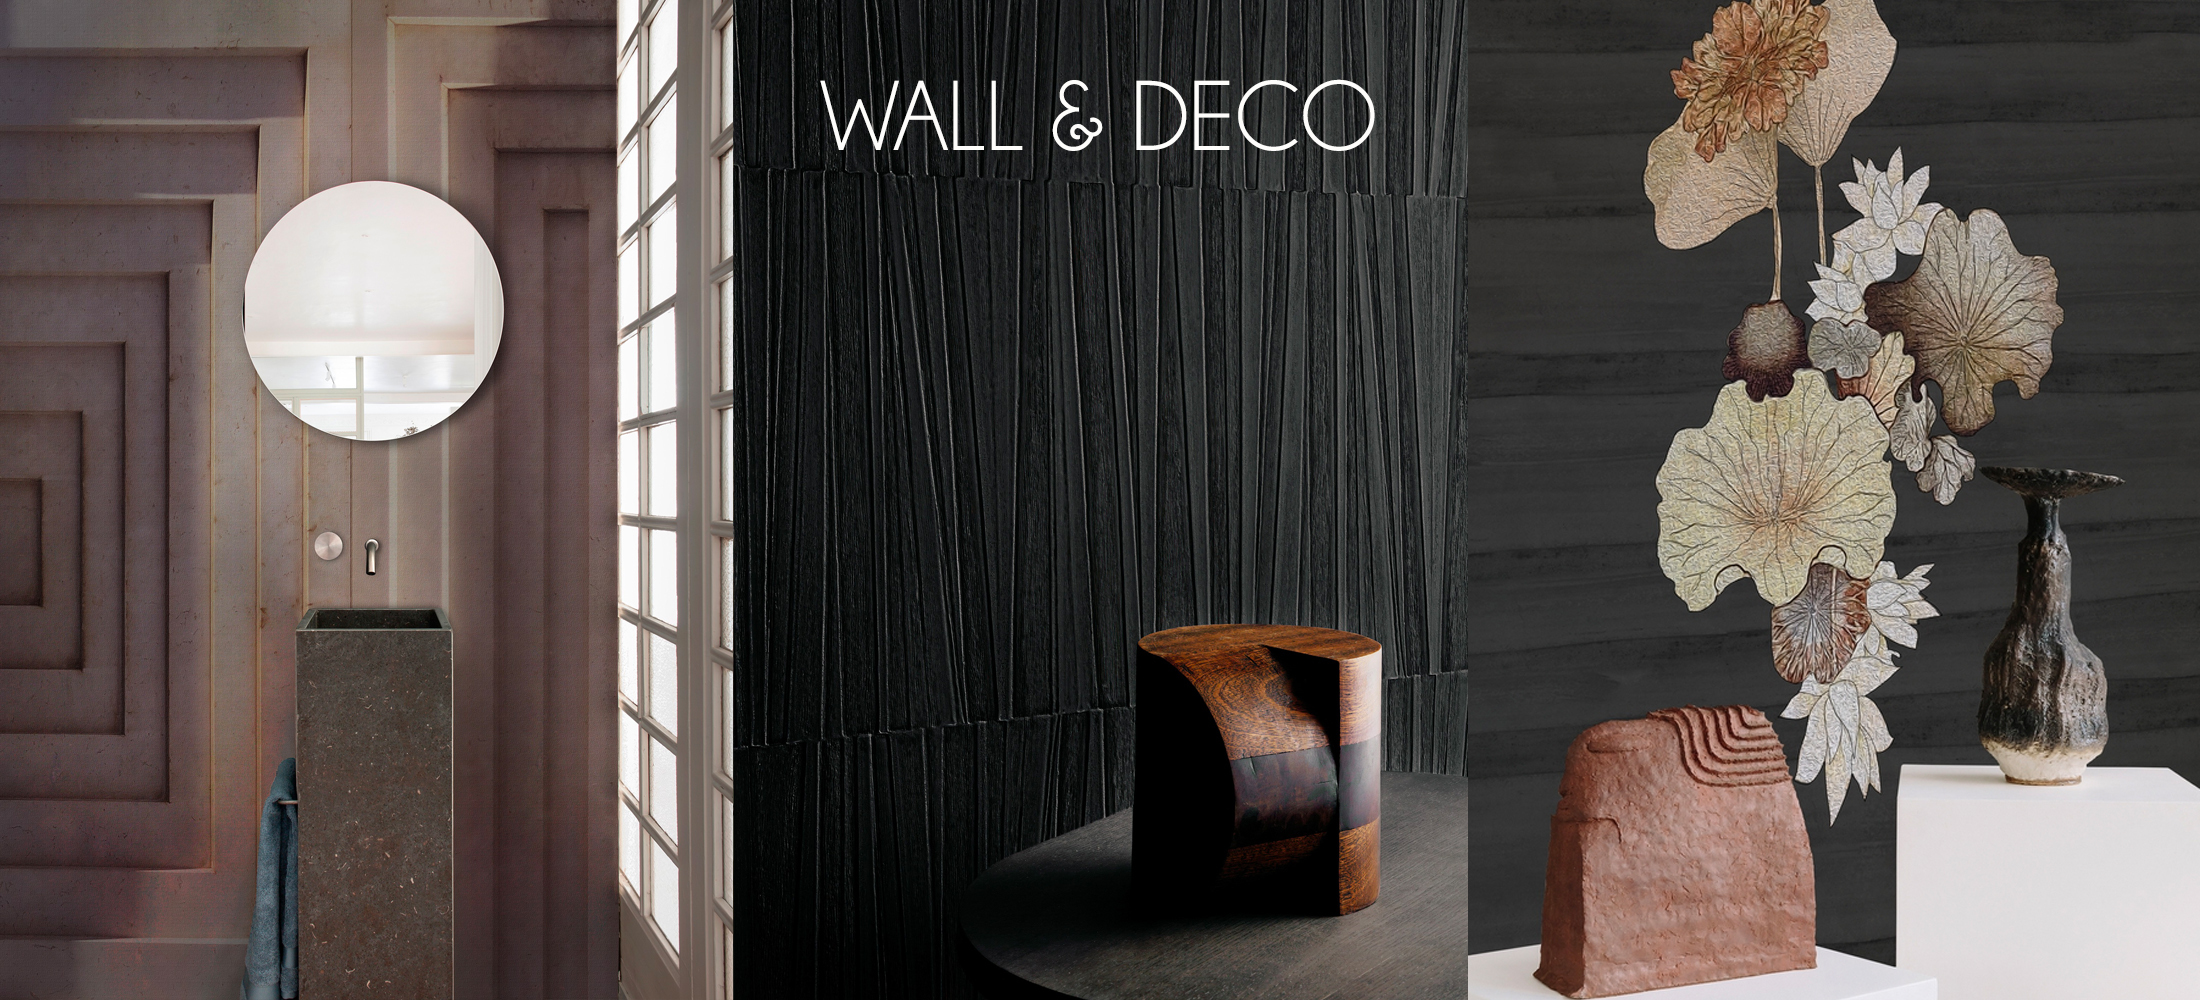 Wall & Deco behangfabriek